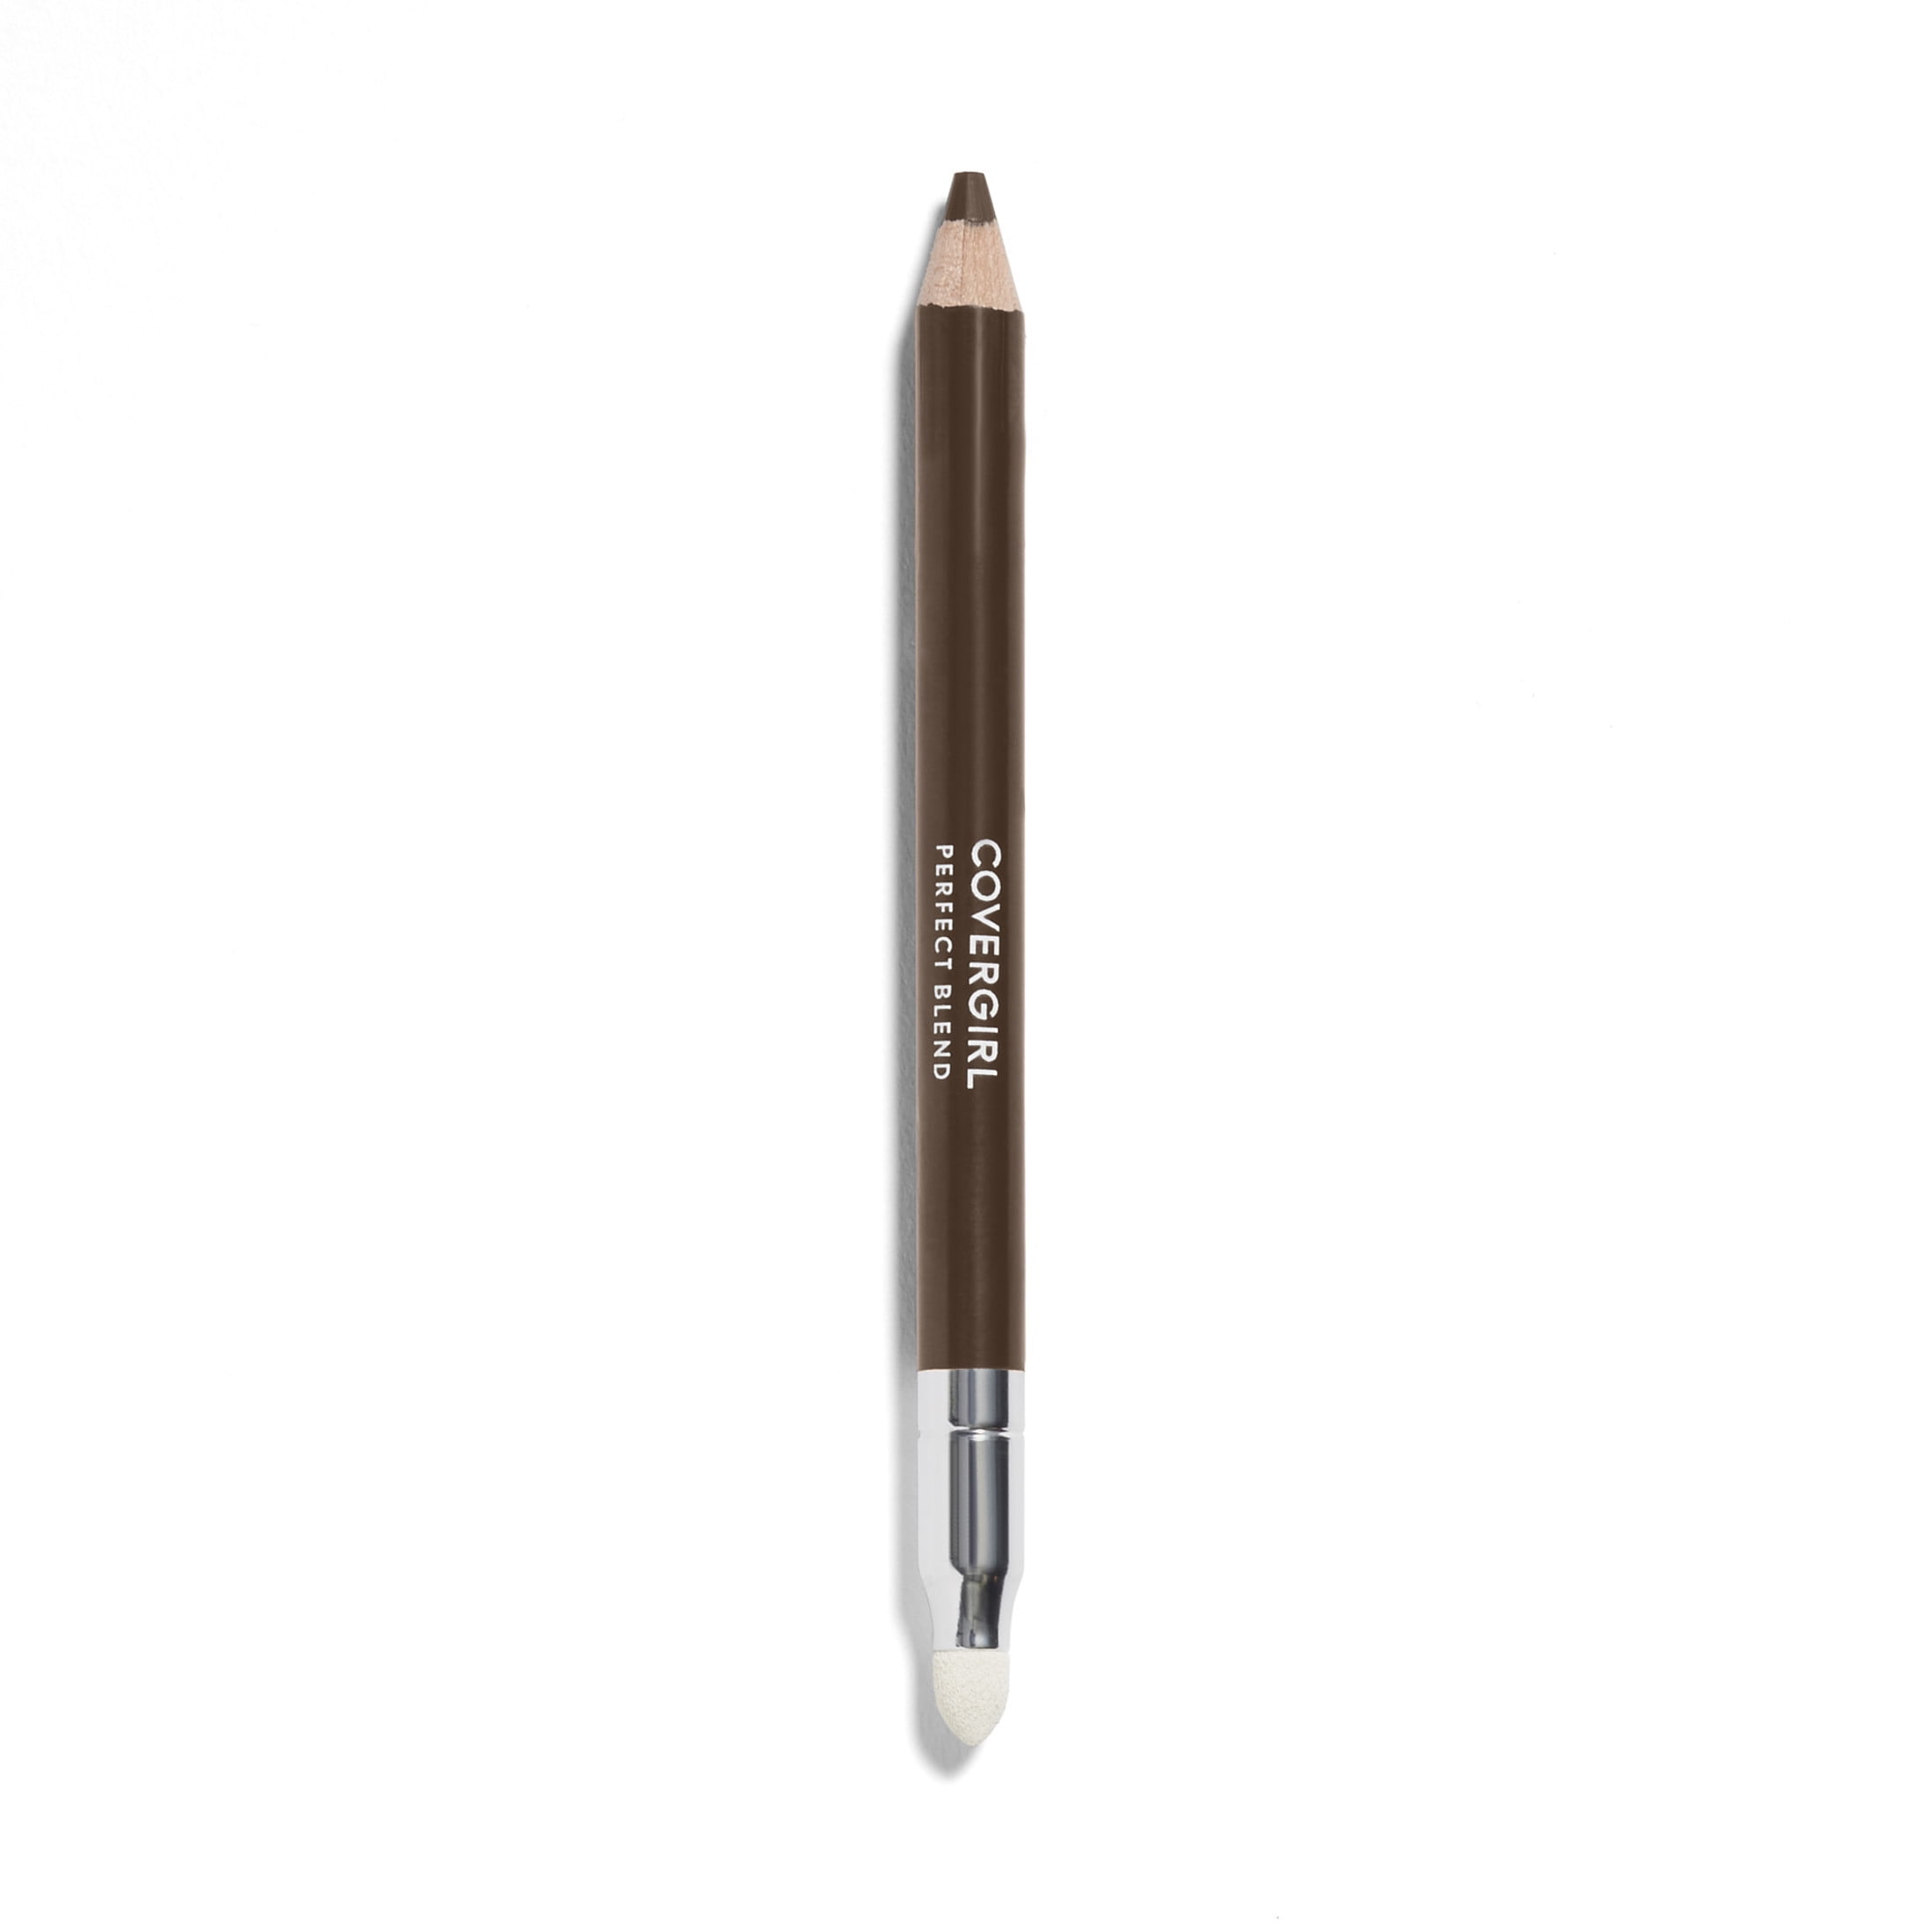 COVERGIRL Perfect Blend Eyeliner Pencil, 110 Black Brown, 0.03 oz, Eyeliner Pencil with Blending Tip, Eyeliner, Eyeliner Pencil, Long Lasting Eyeliner, Smudging Eyeliner, Smooth Glide